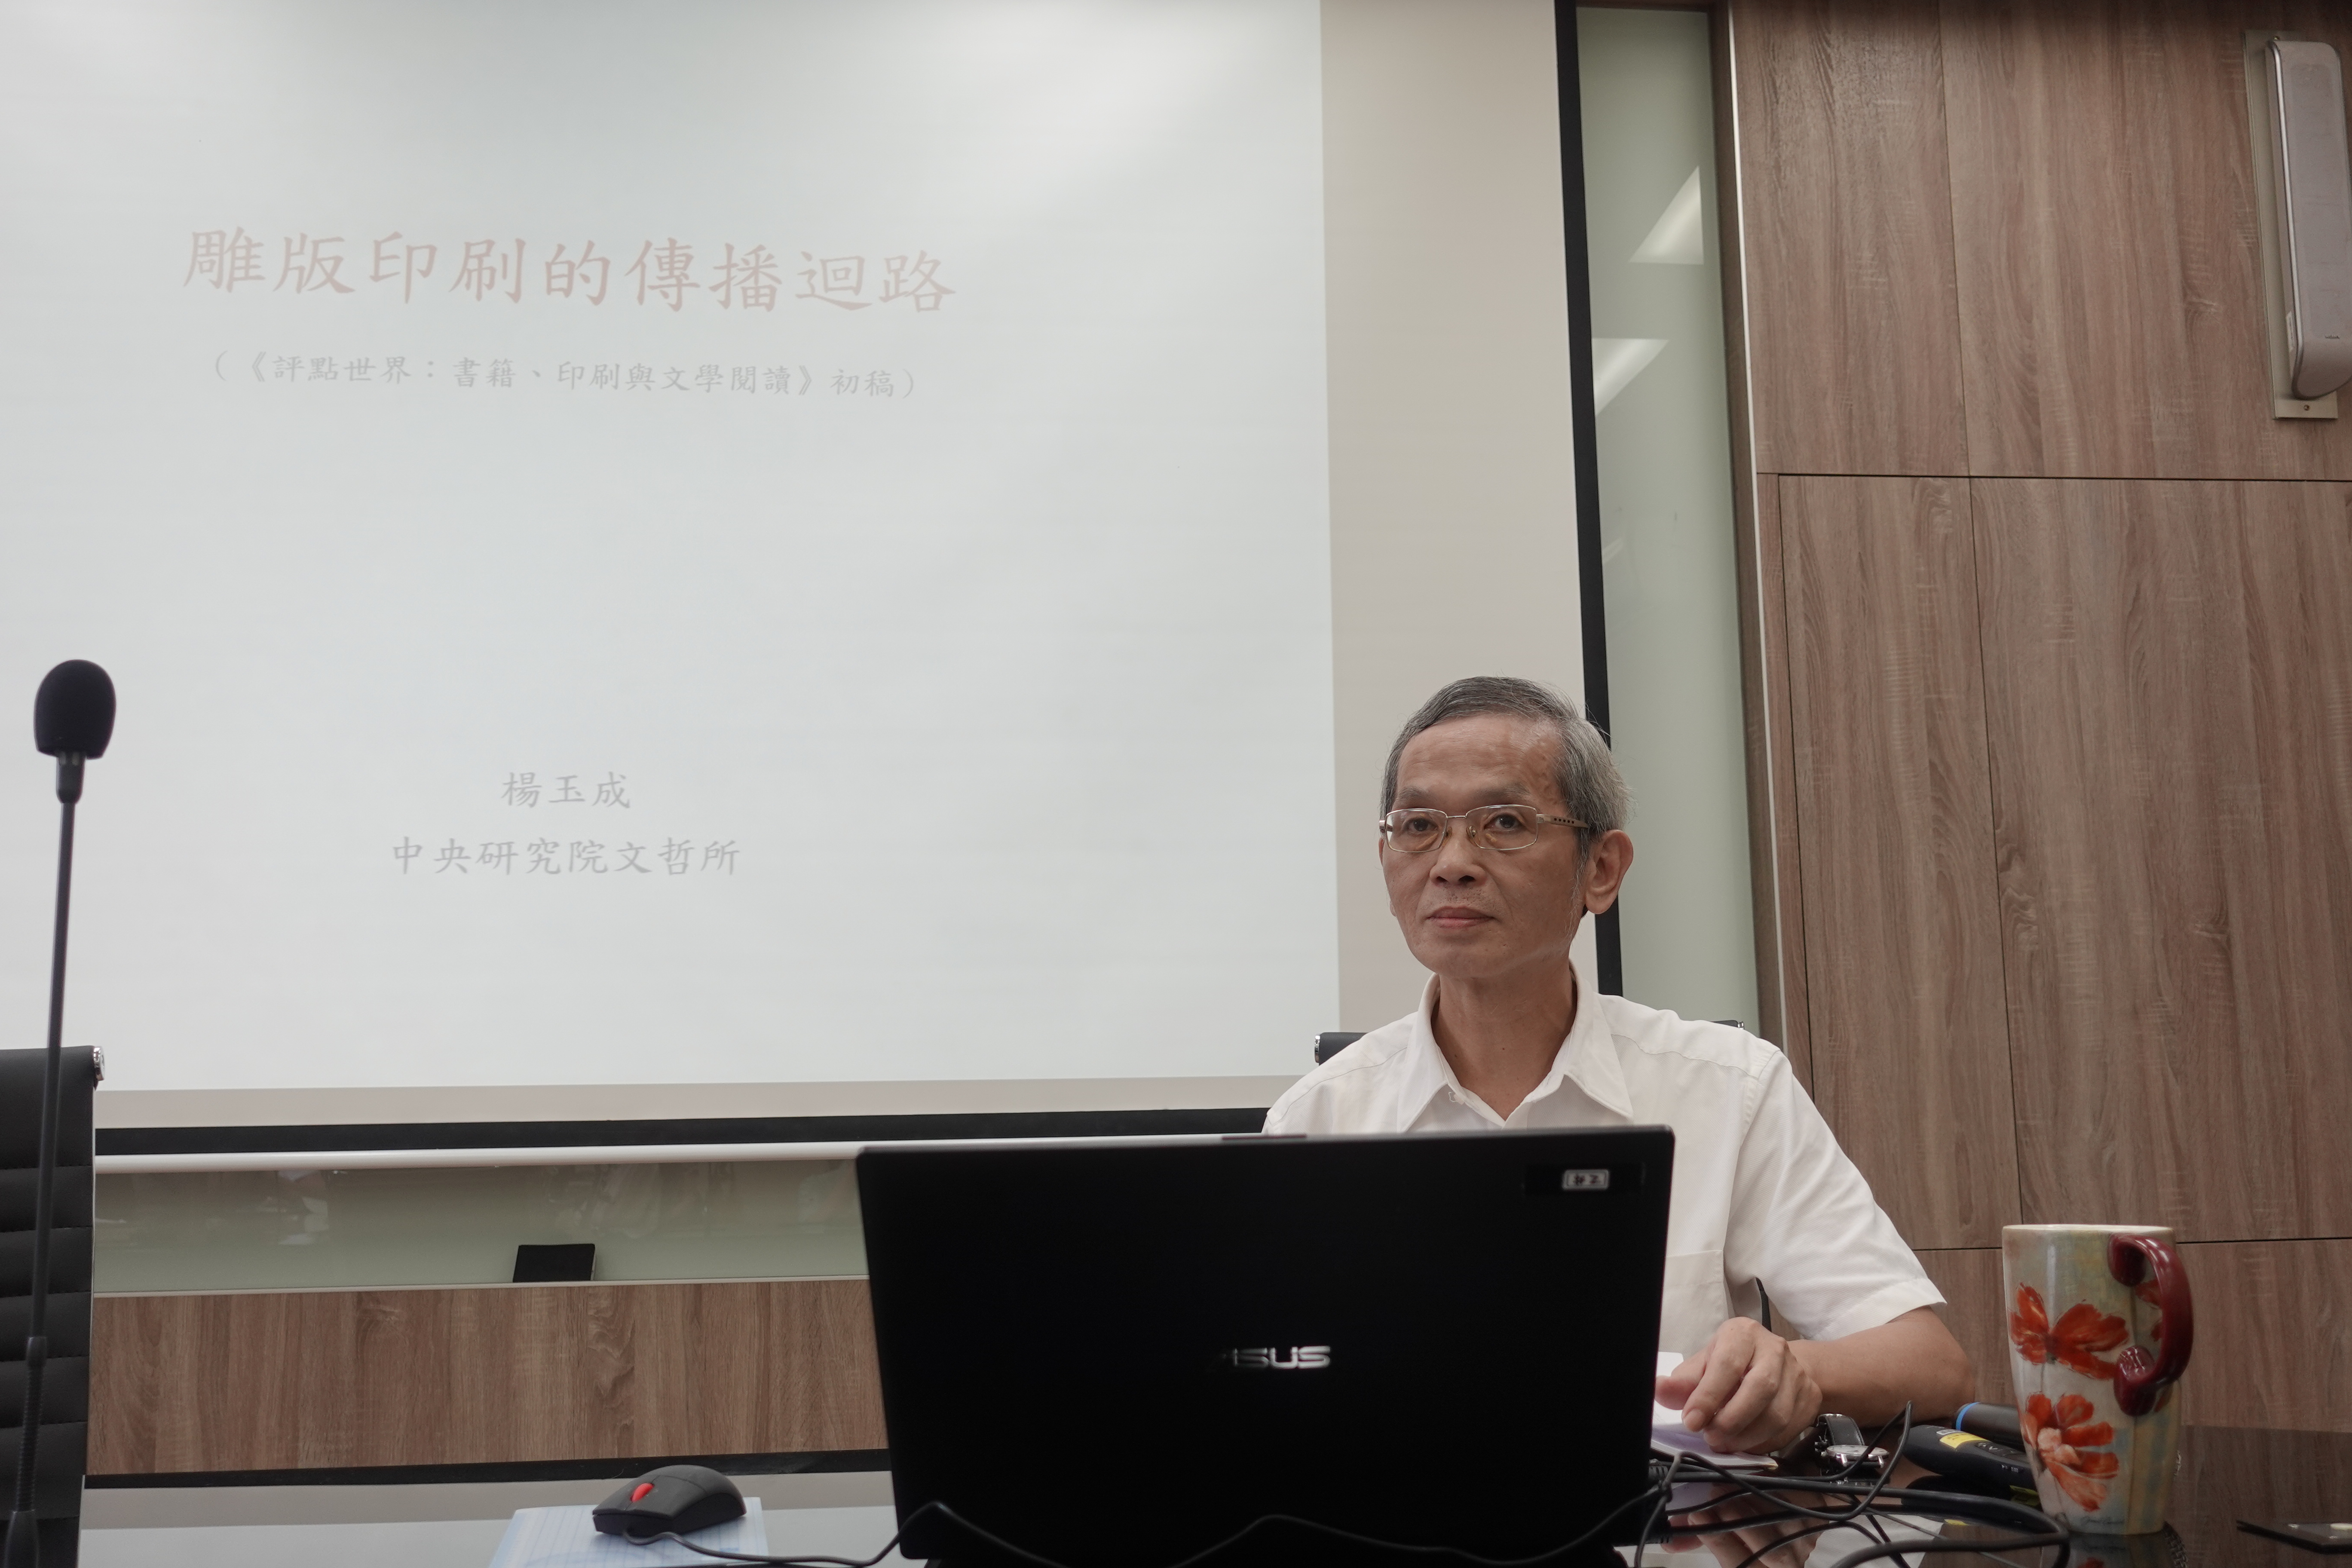 楊玉成教授演講「雕版印刷的傳播迴路」紀要